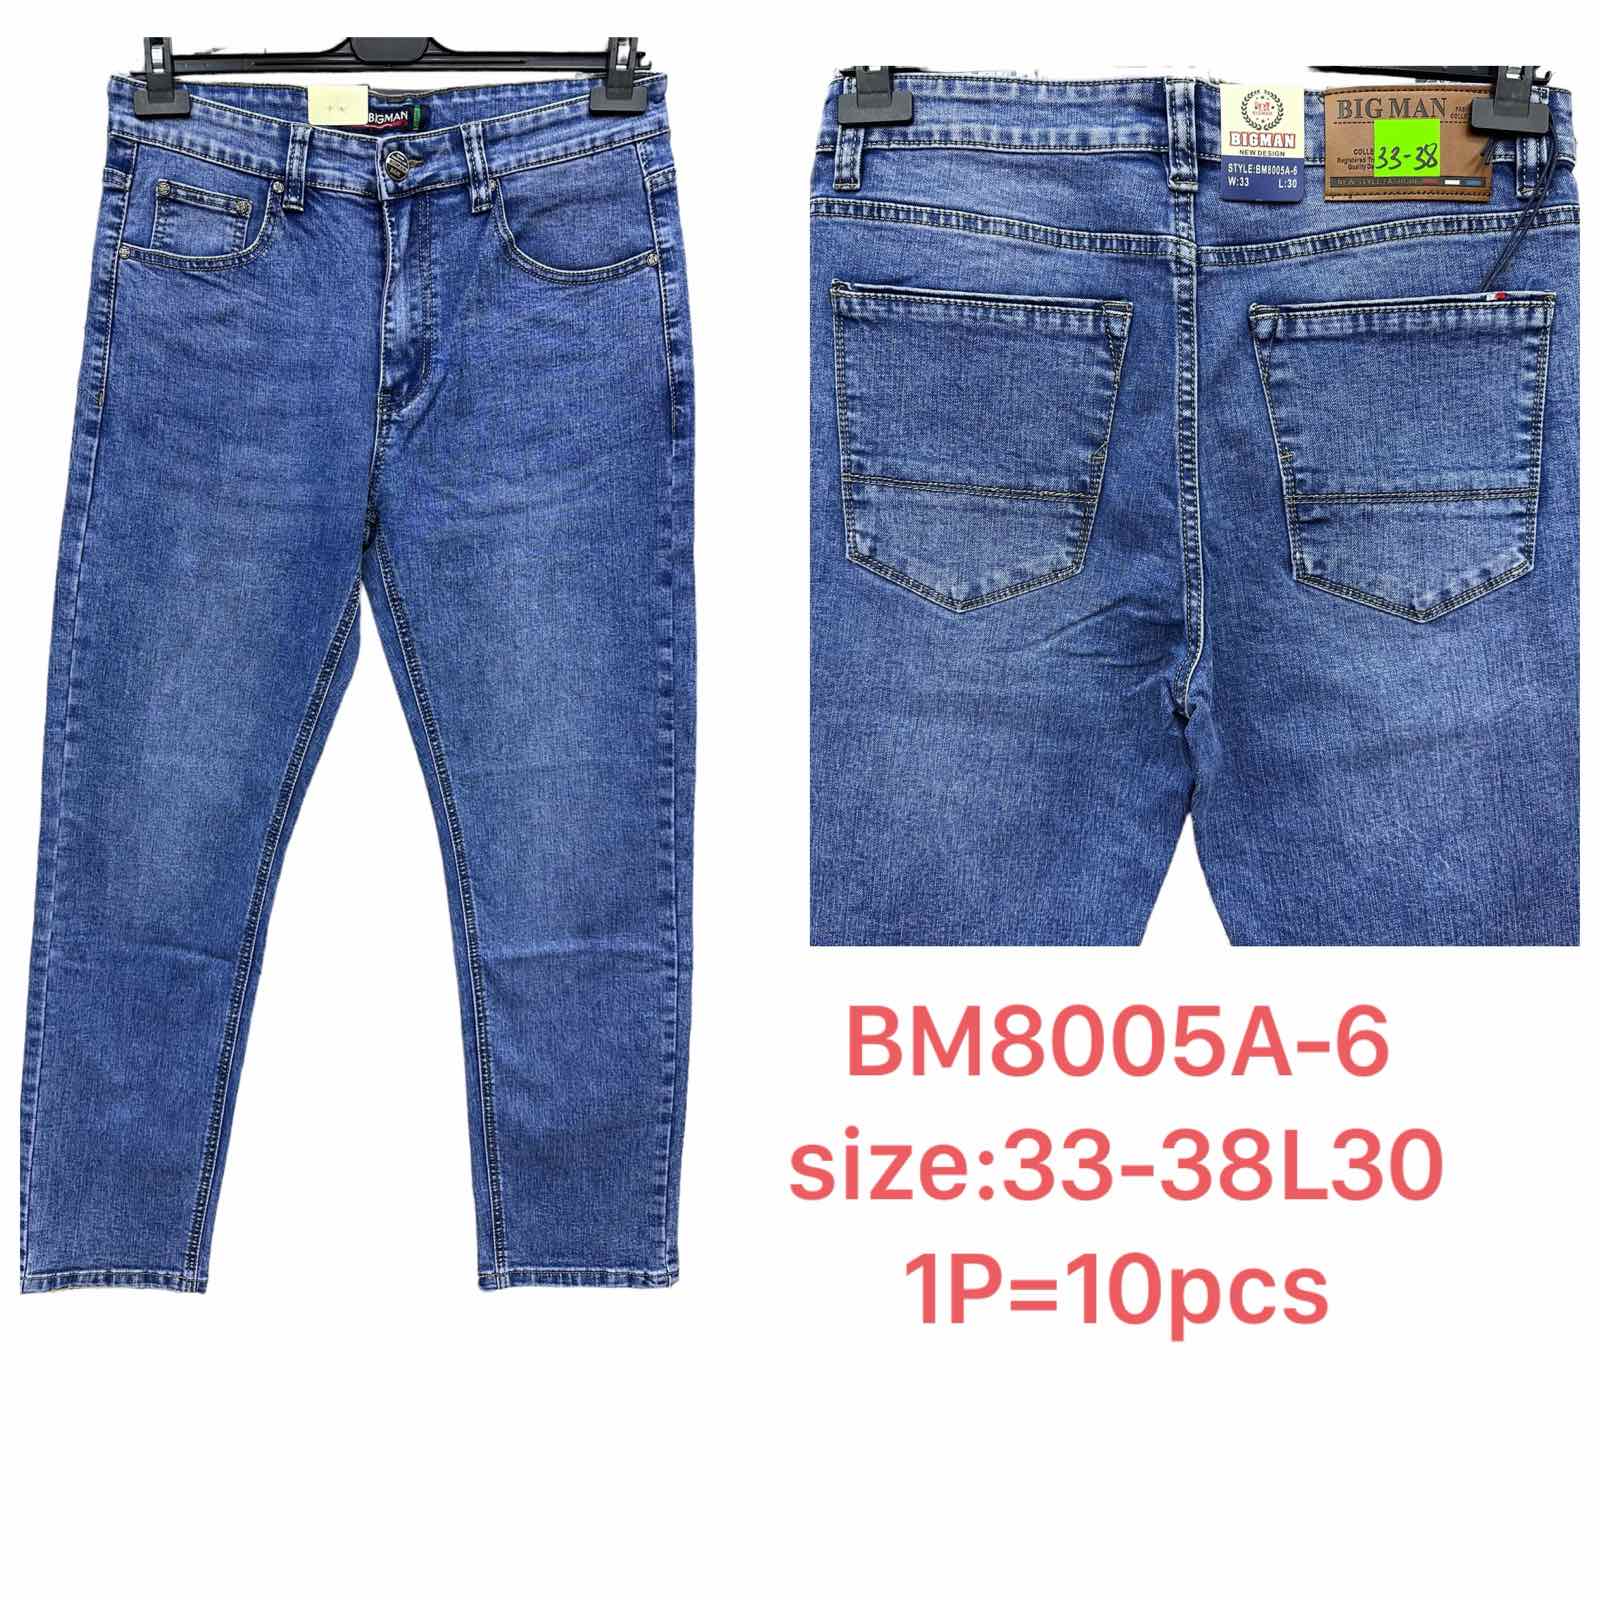 Spodnie meskie jeans  Roz 33-38 L30 Paczka 10szt